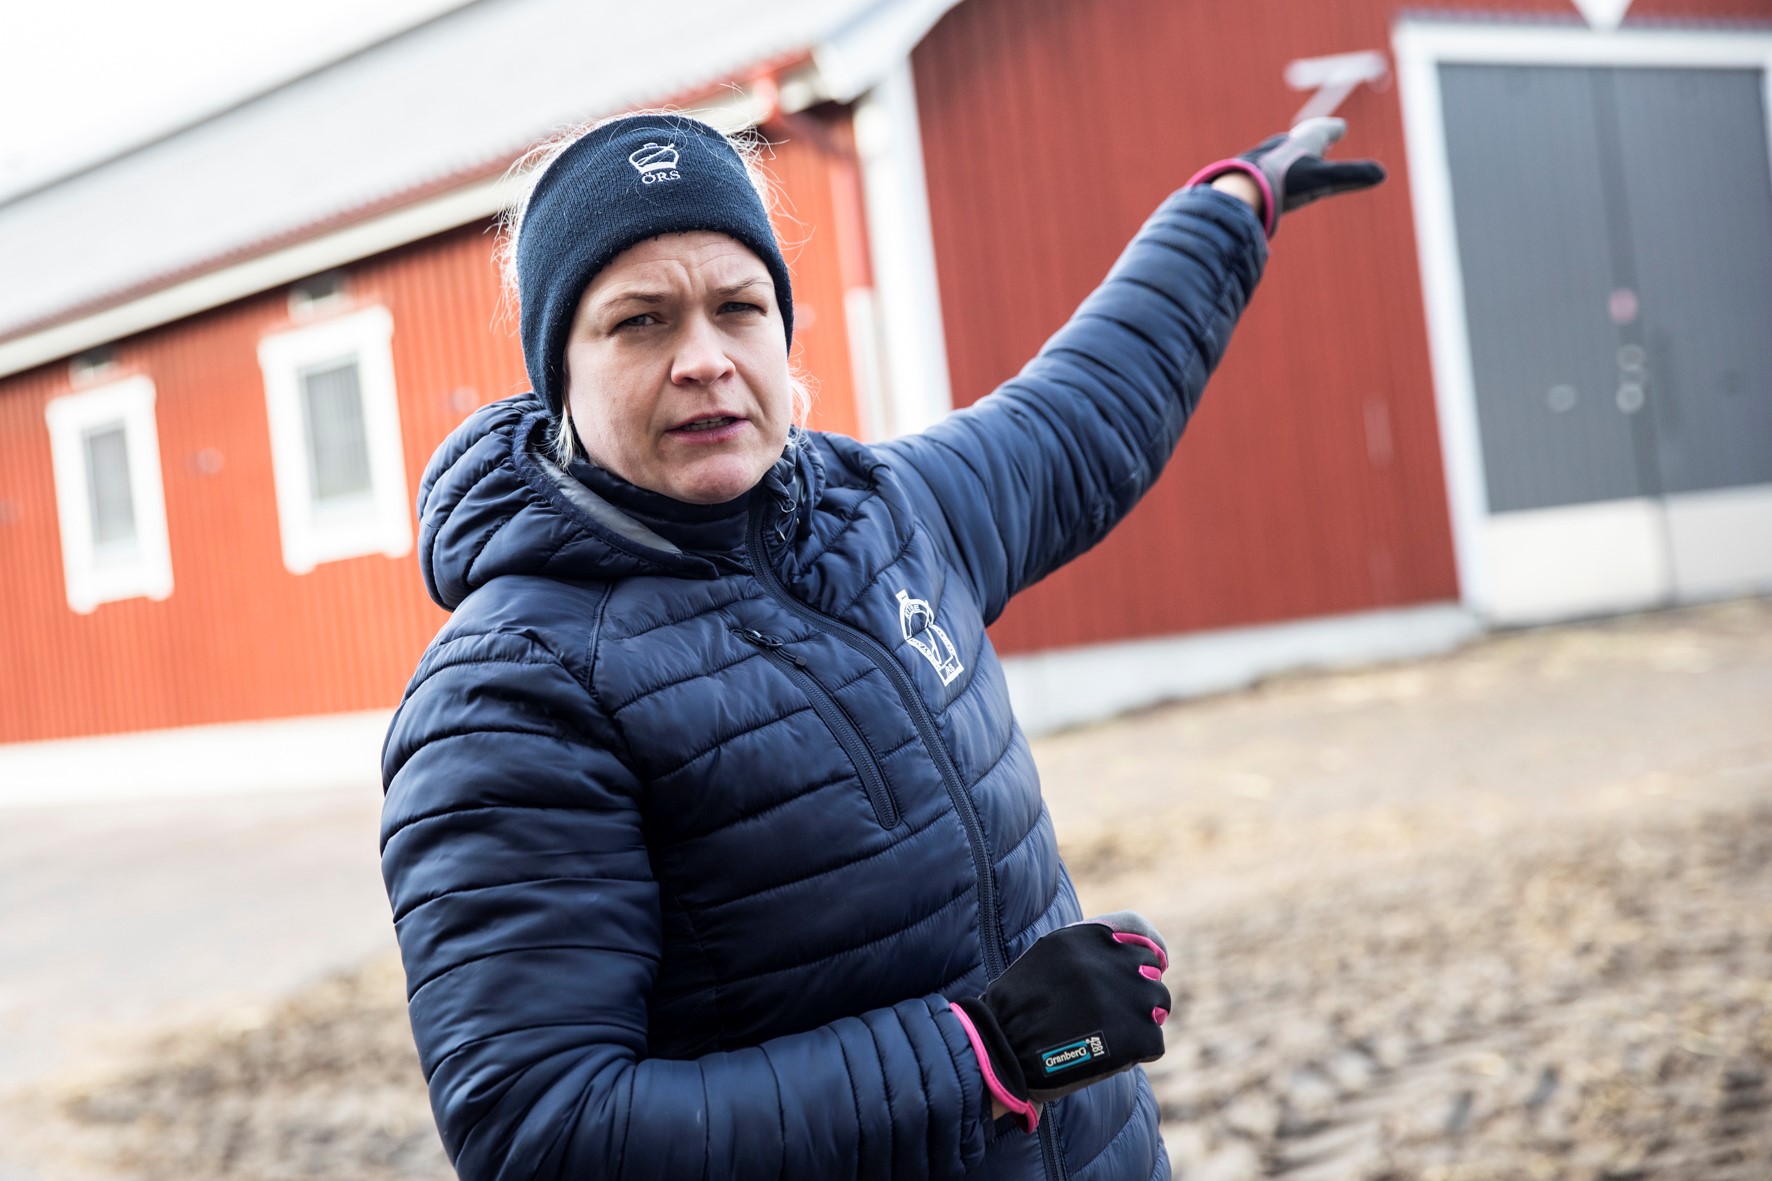 - En ny ridbana bidrar till större möjligheter att vara ute flera dagar i veckan, säger stallchef Åsa Fristedt.